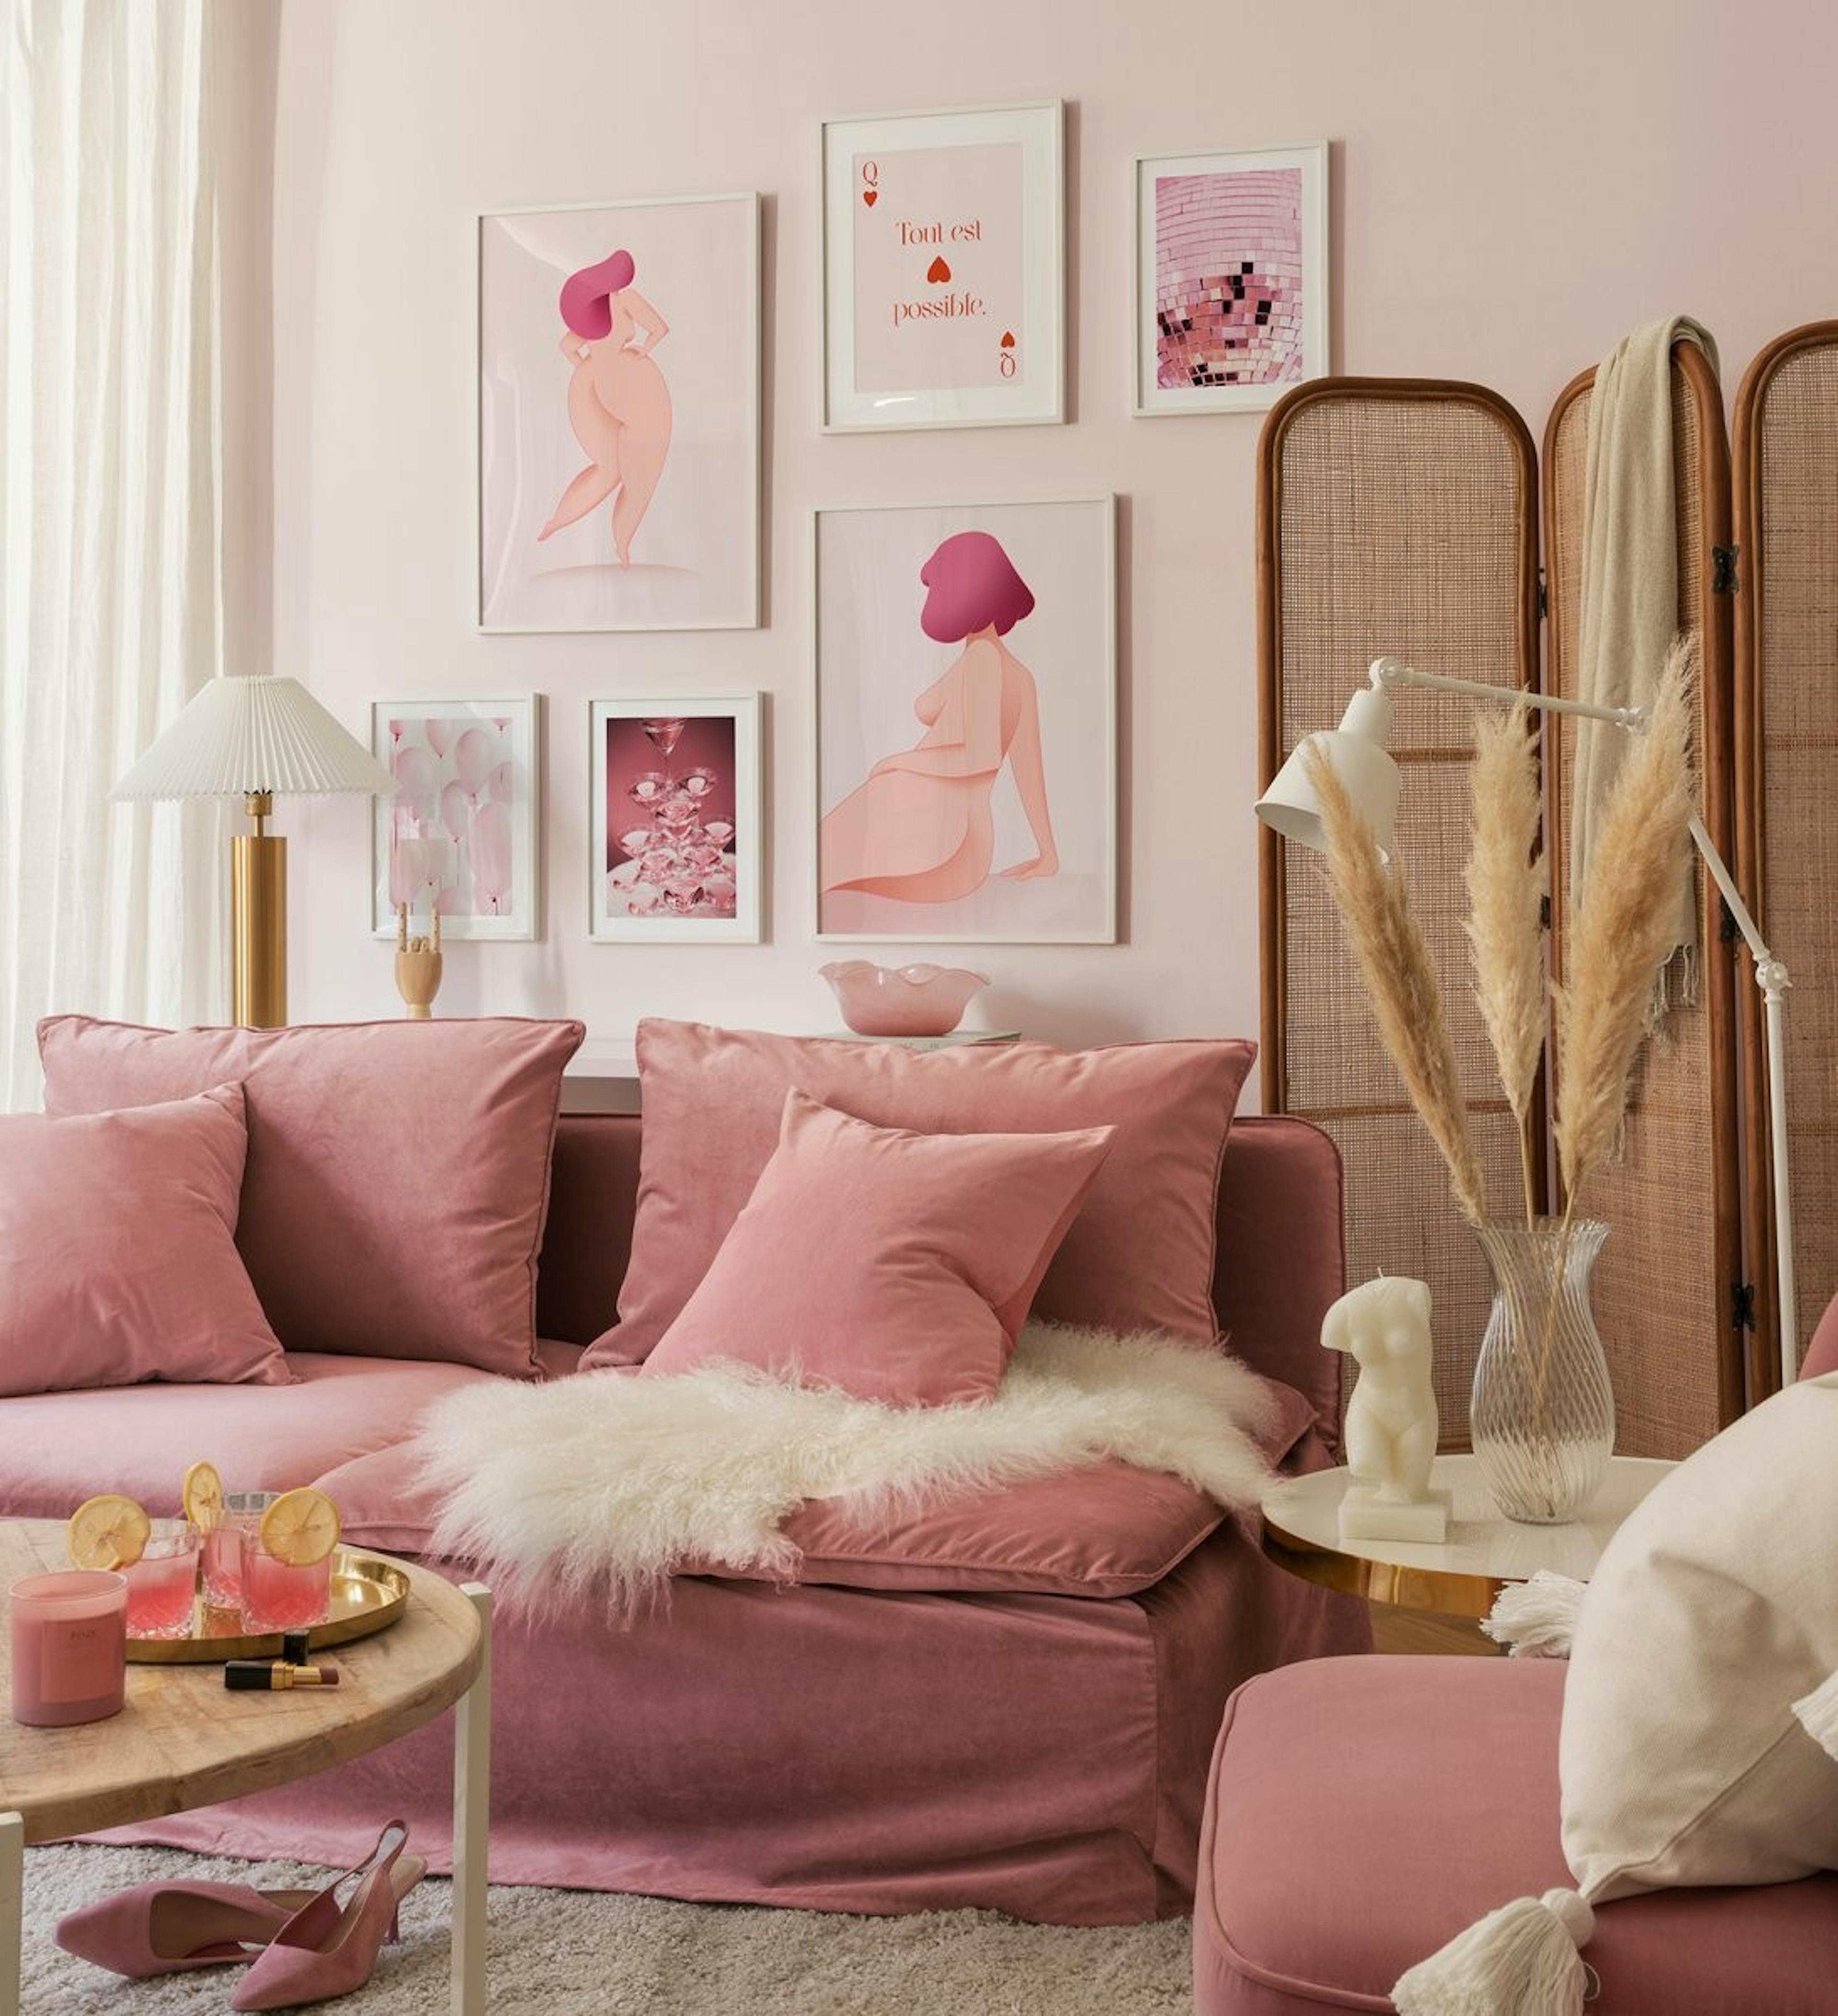 Ściana galerii inspirowana Girl power w kolorze różowym z kobiecych kształtów, ilustracji i zdjęć z białymi drewnianymi ramkami